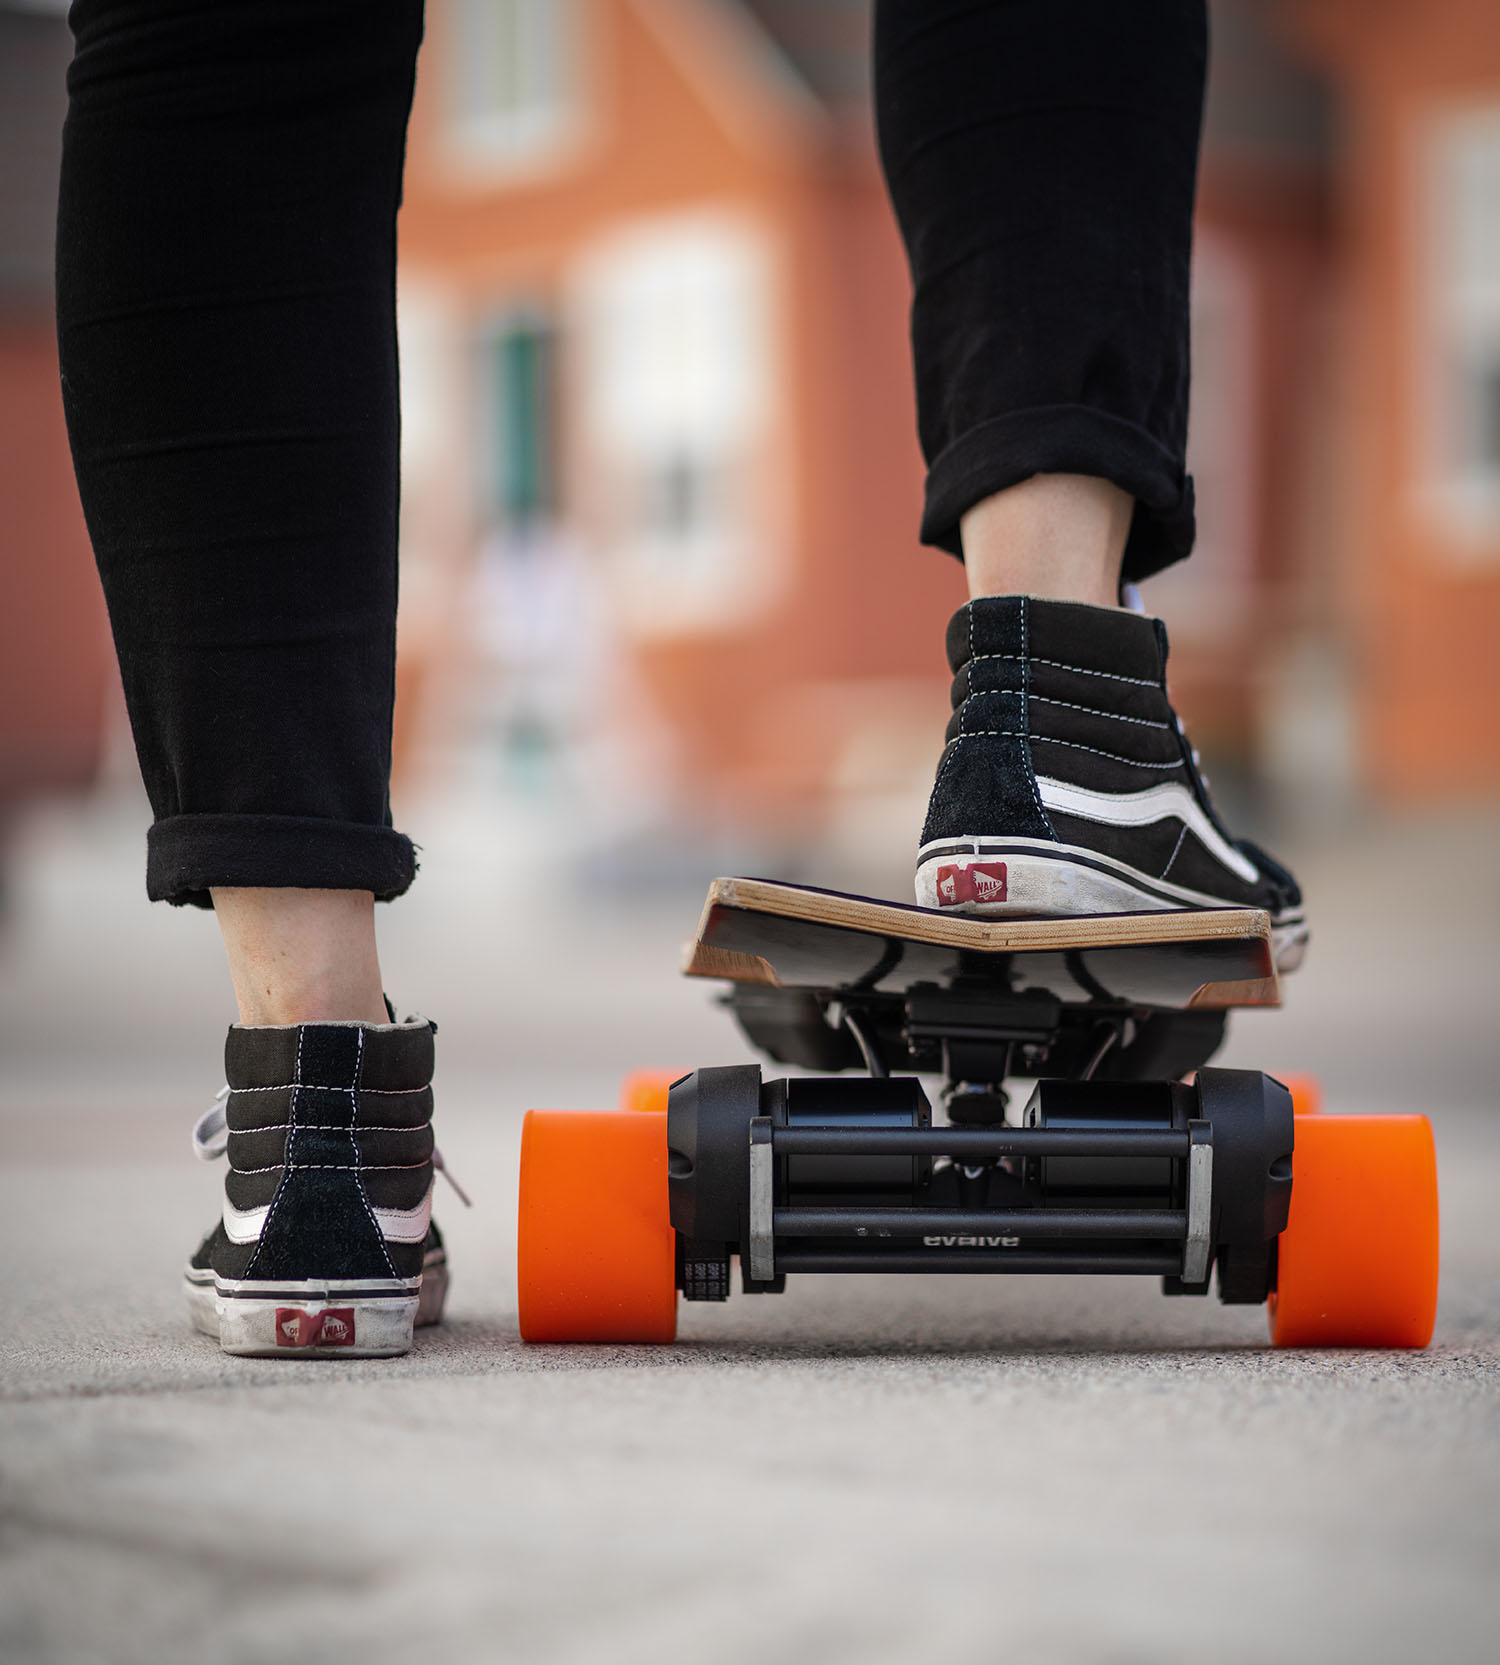 EVOLVE SKATEBOARDS Longboard skate electrico Carbon GTR All Terrain